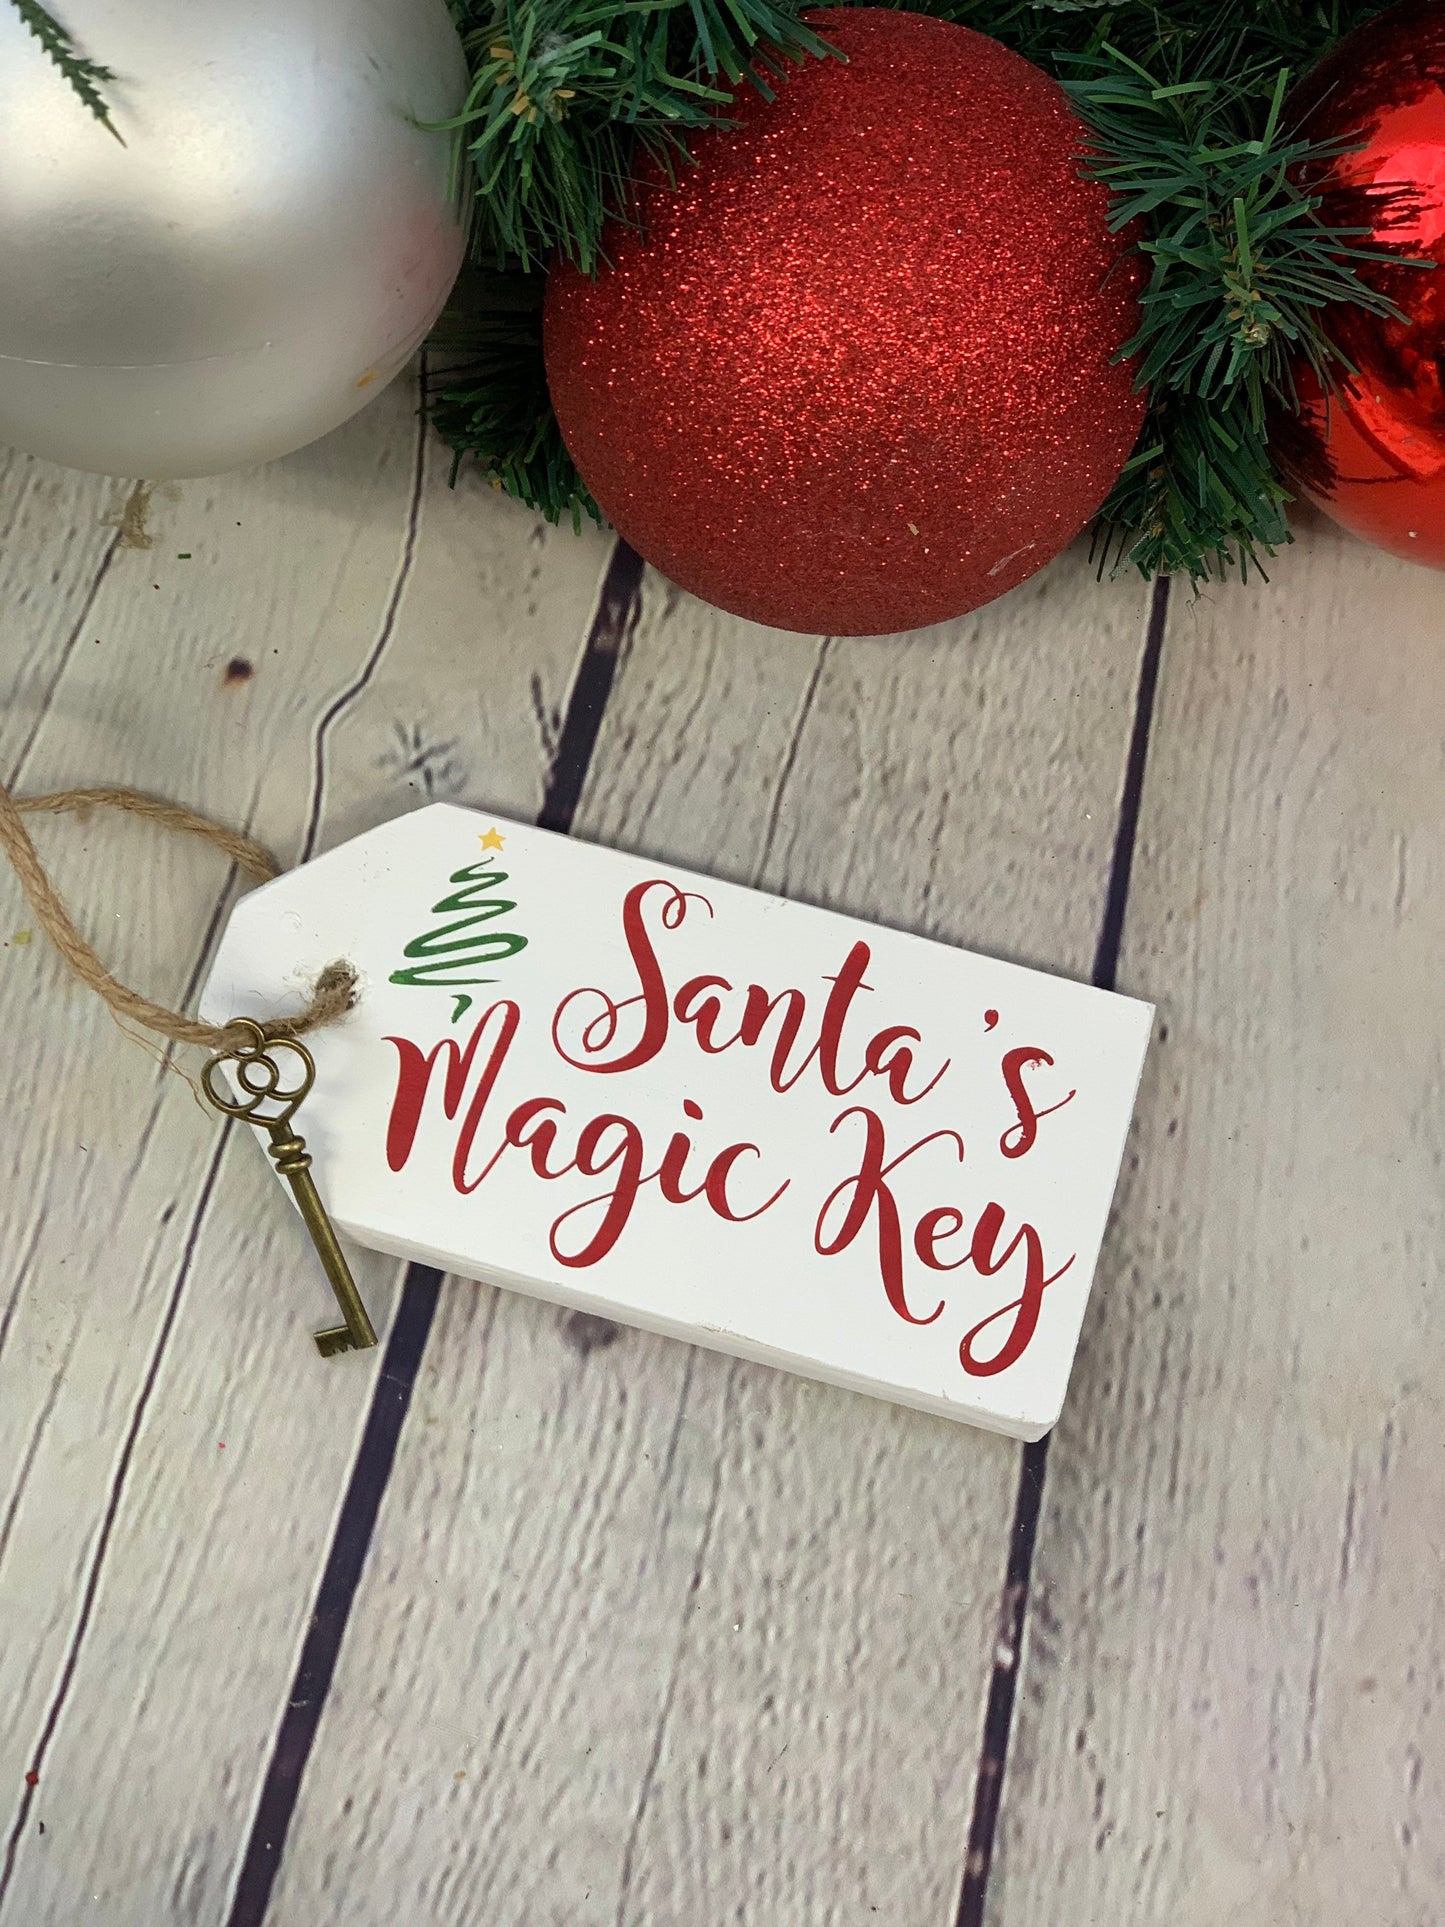 Santa's Magic Key | No Chimney House | Wooden Santa Magic Key Tag | Rustic Santa Decor